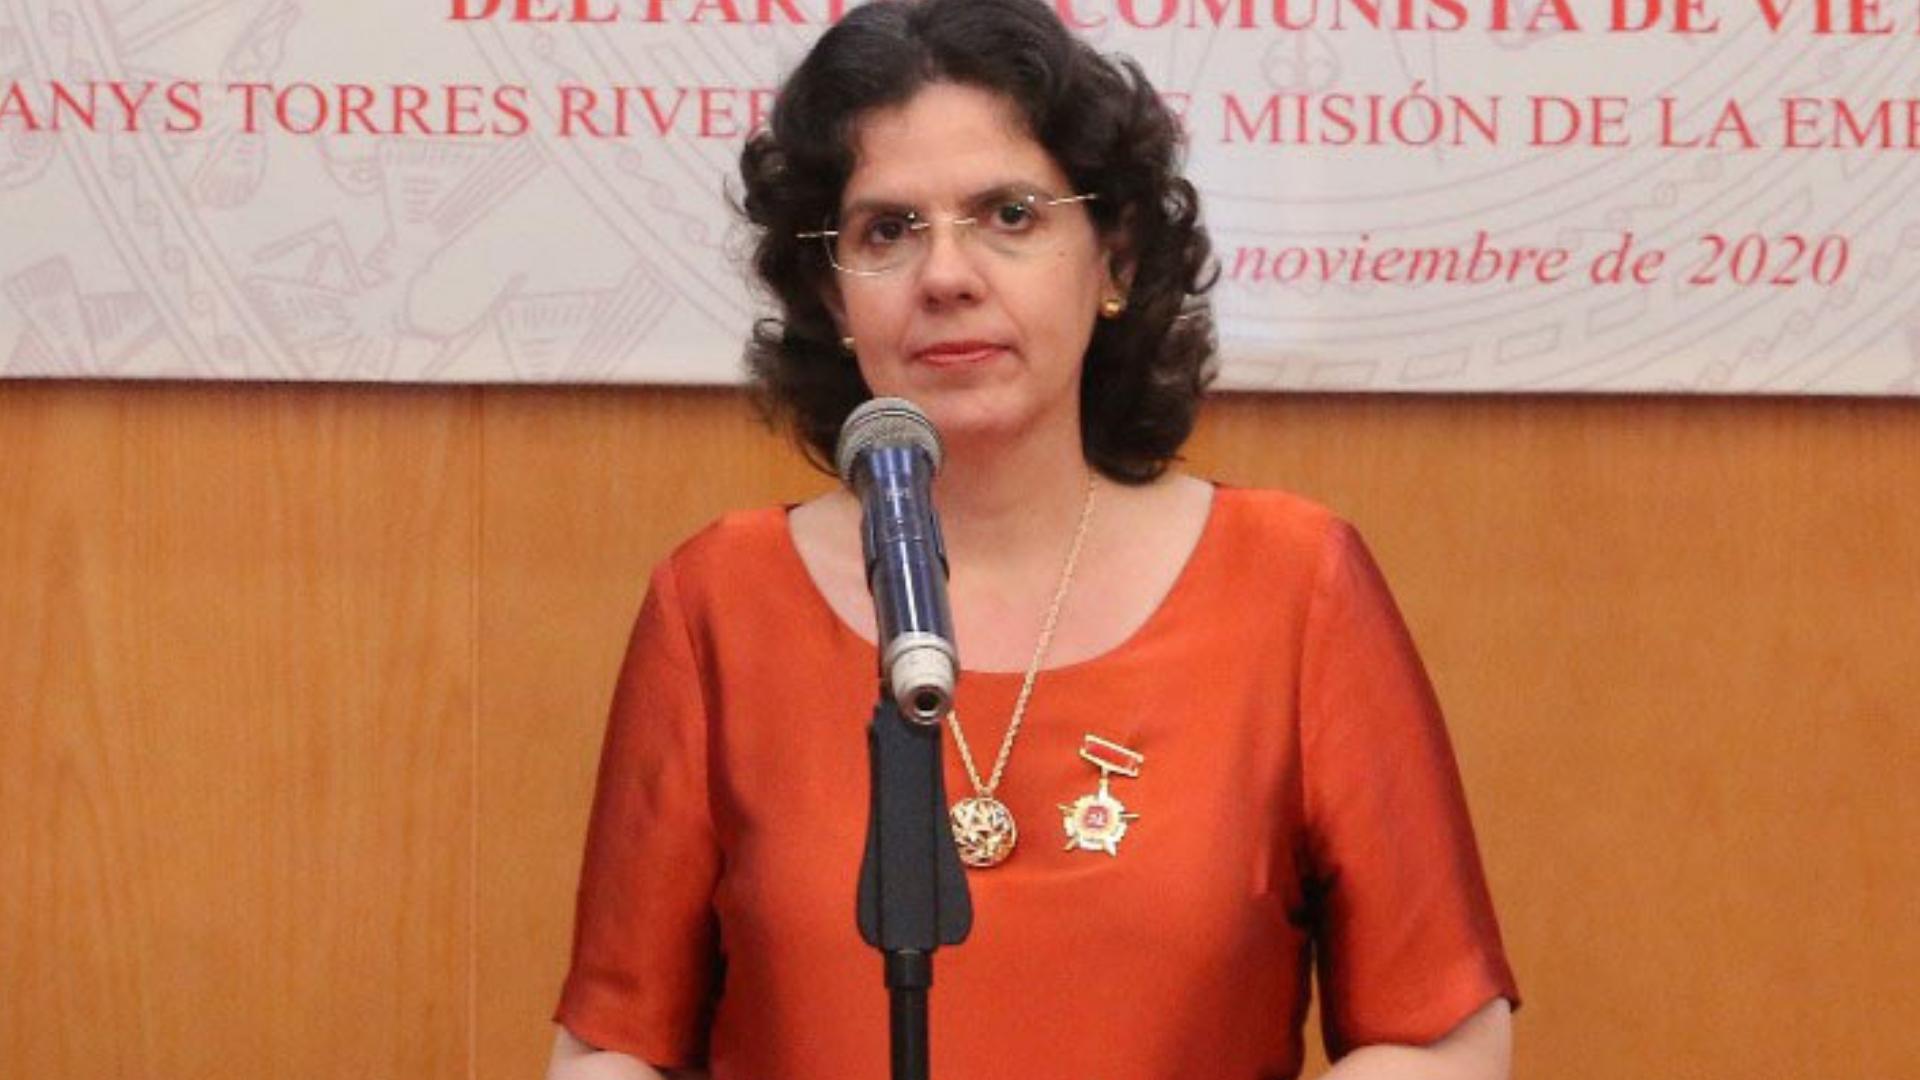 Lianys Torres Rivera, embajadora del régimen de Cuba en los Estados Unidos.